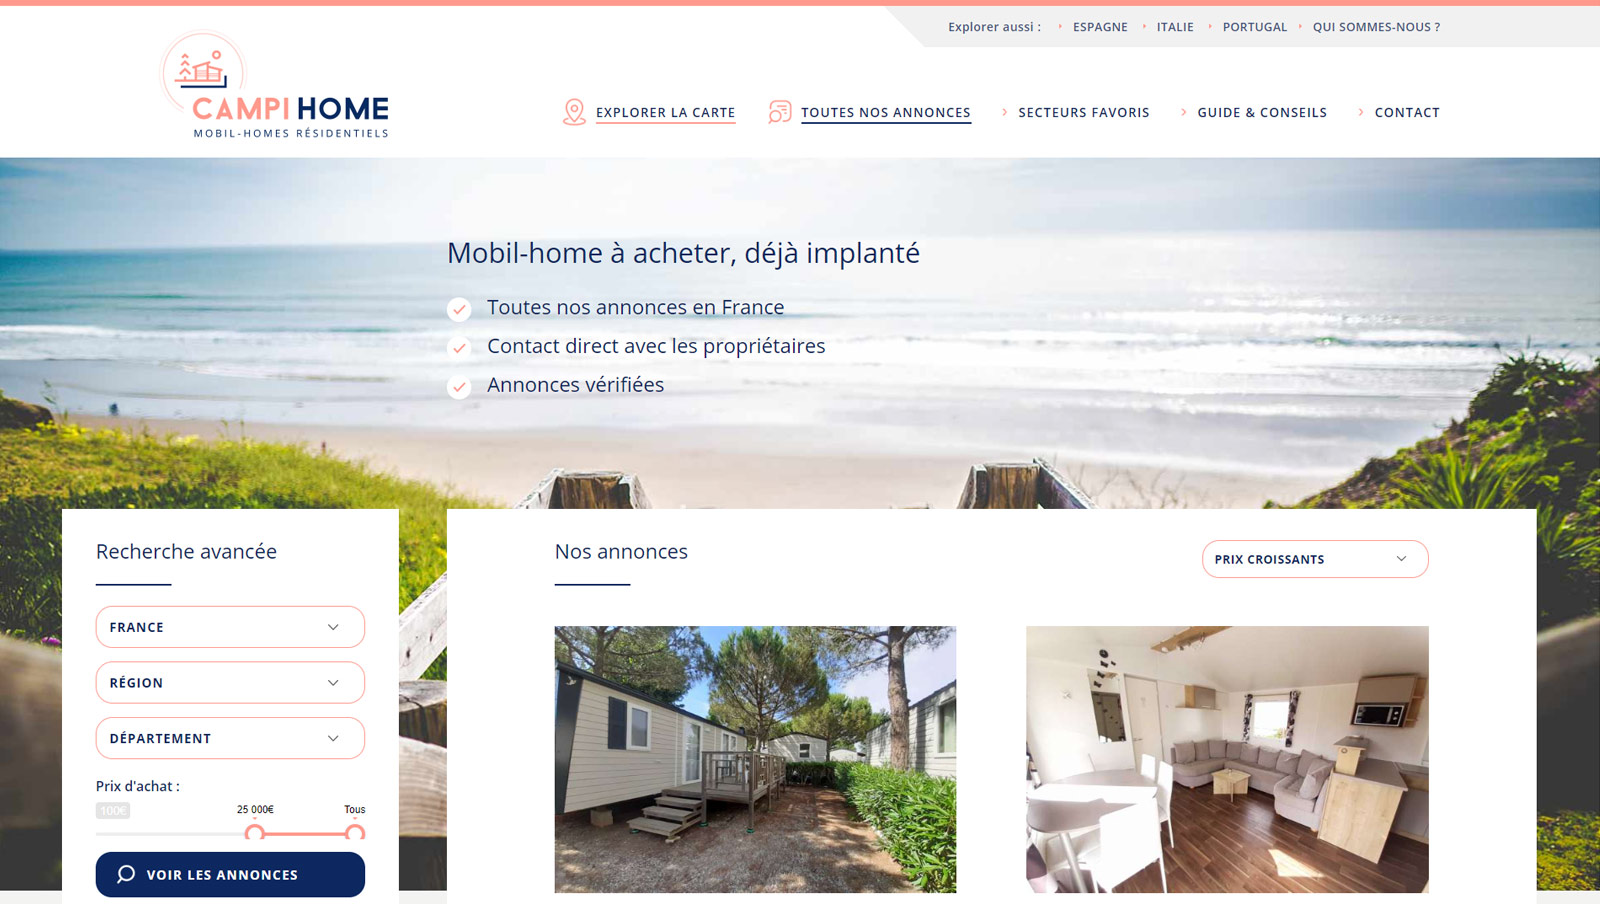 Campihome : création du site internet d'annonces de mobil-home en vente dans des campings, Hervé Augoyat